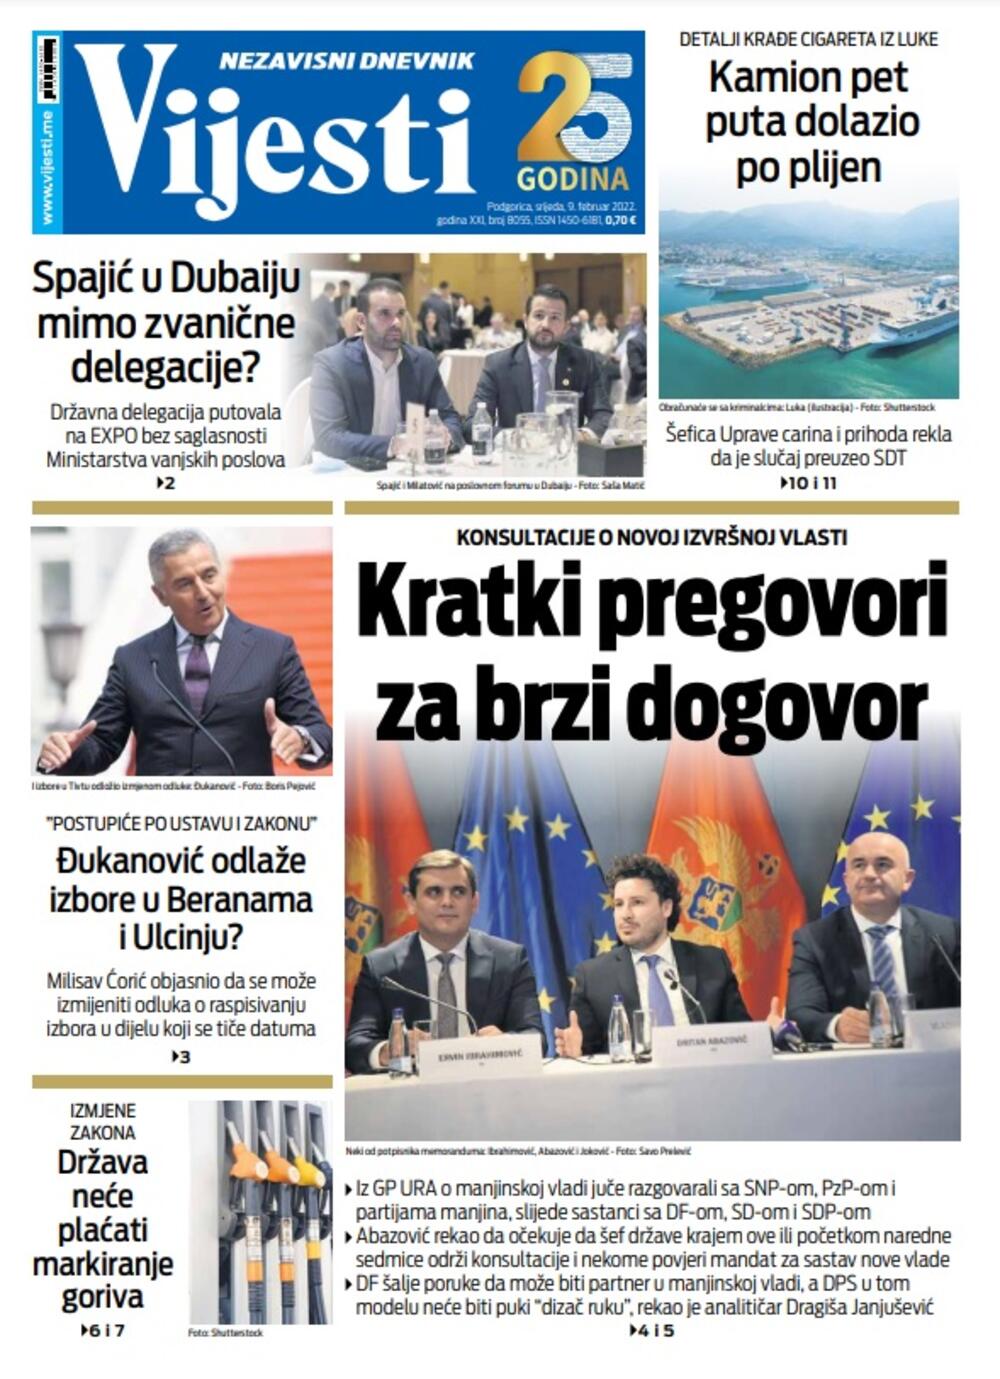 Naslovna strana "Vijesti" za 9. februar 2022., Foto: Vijesti